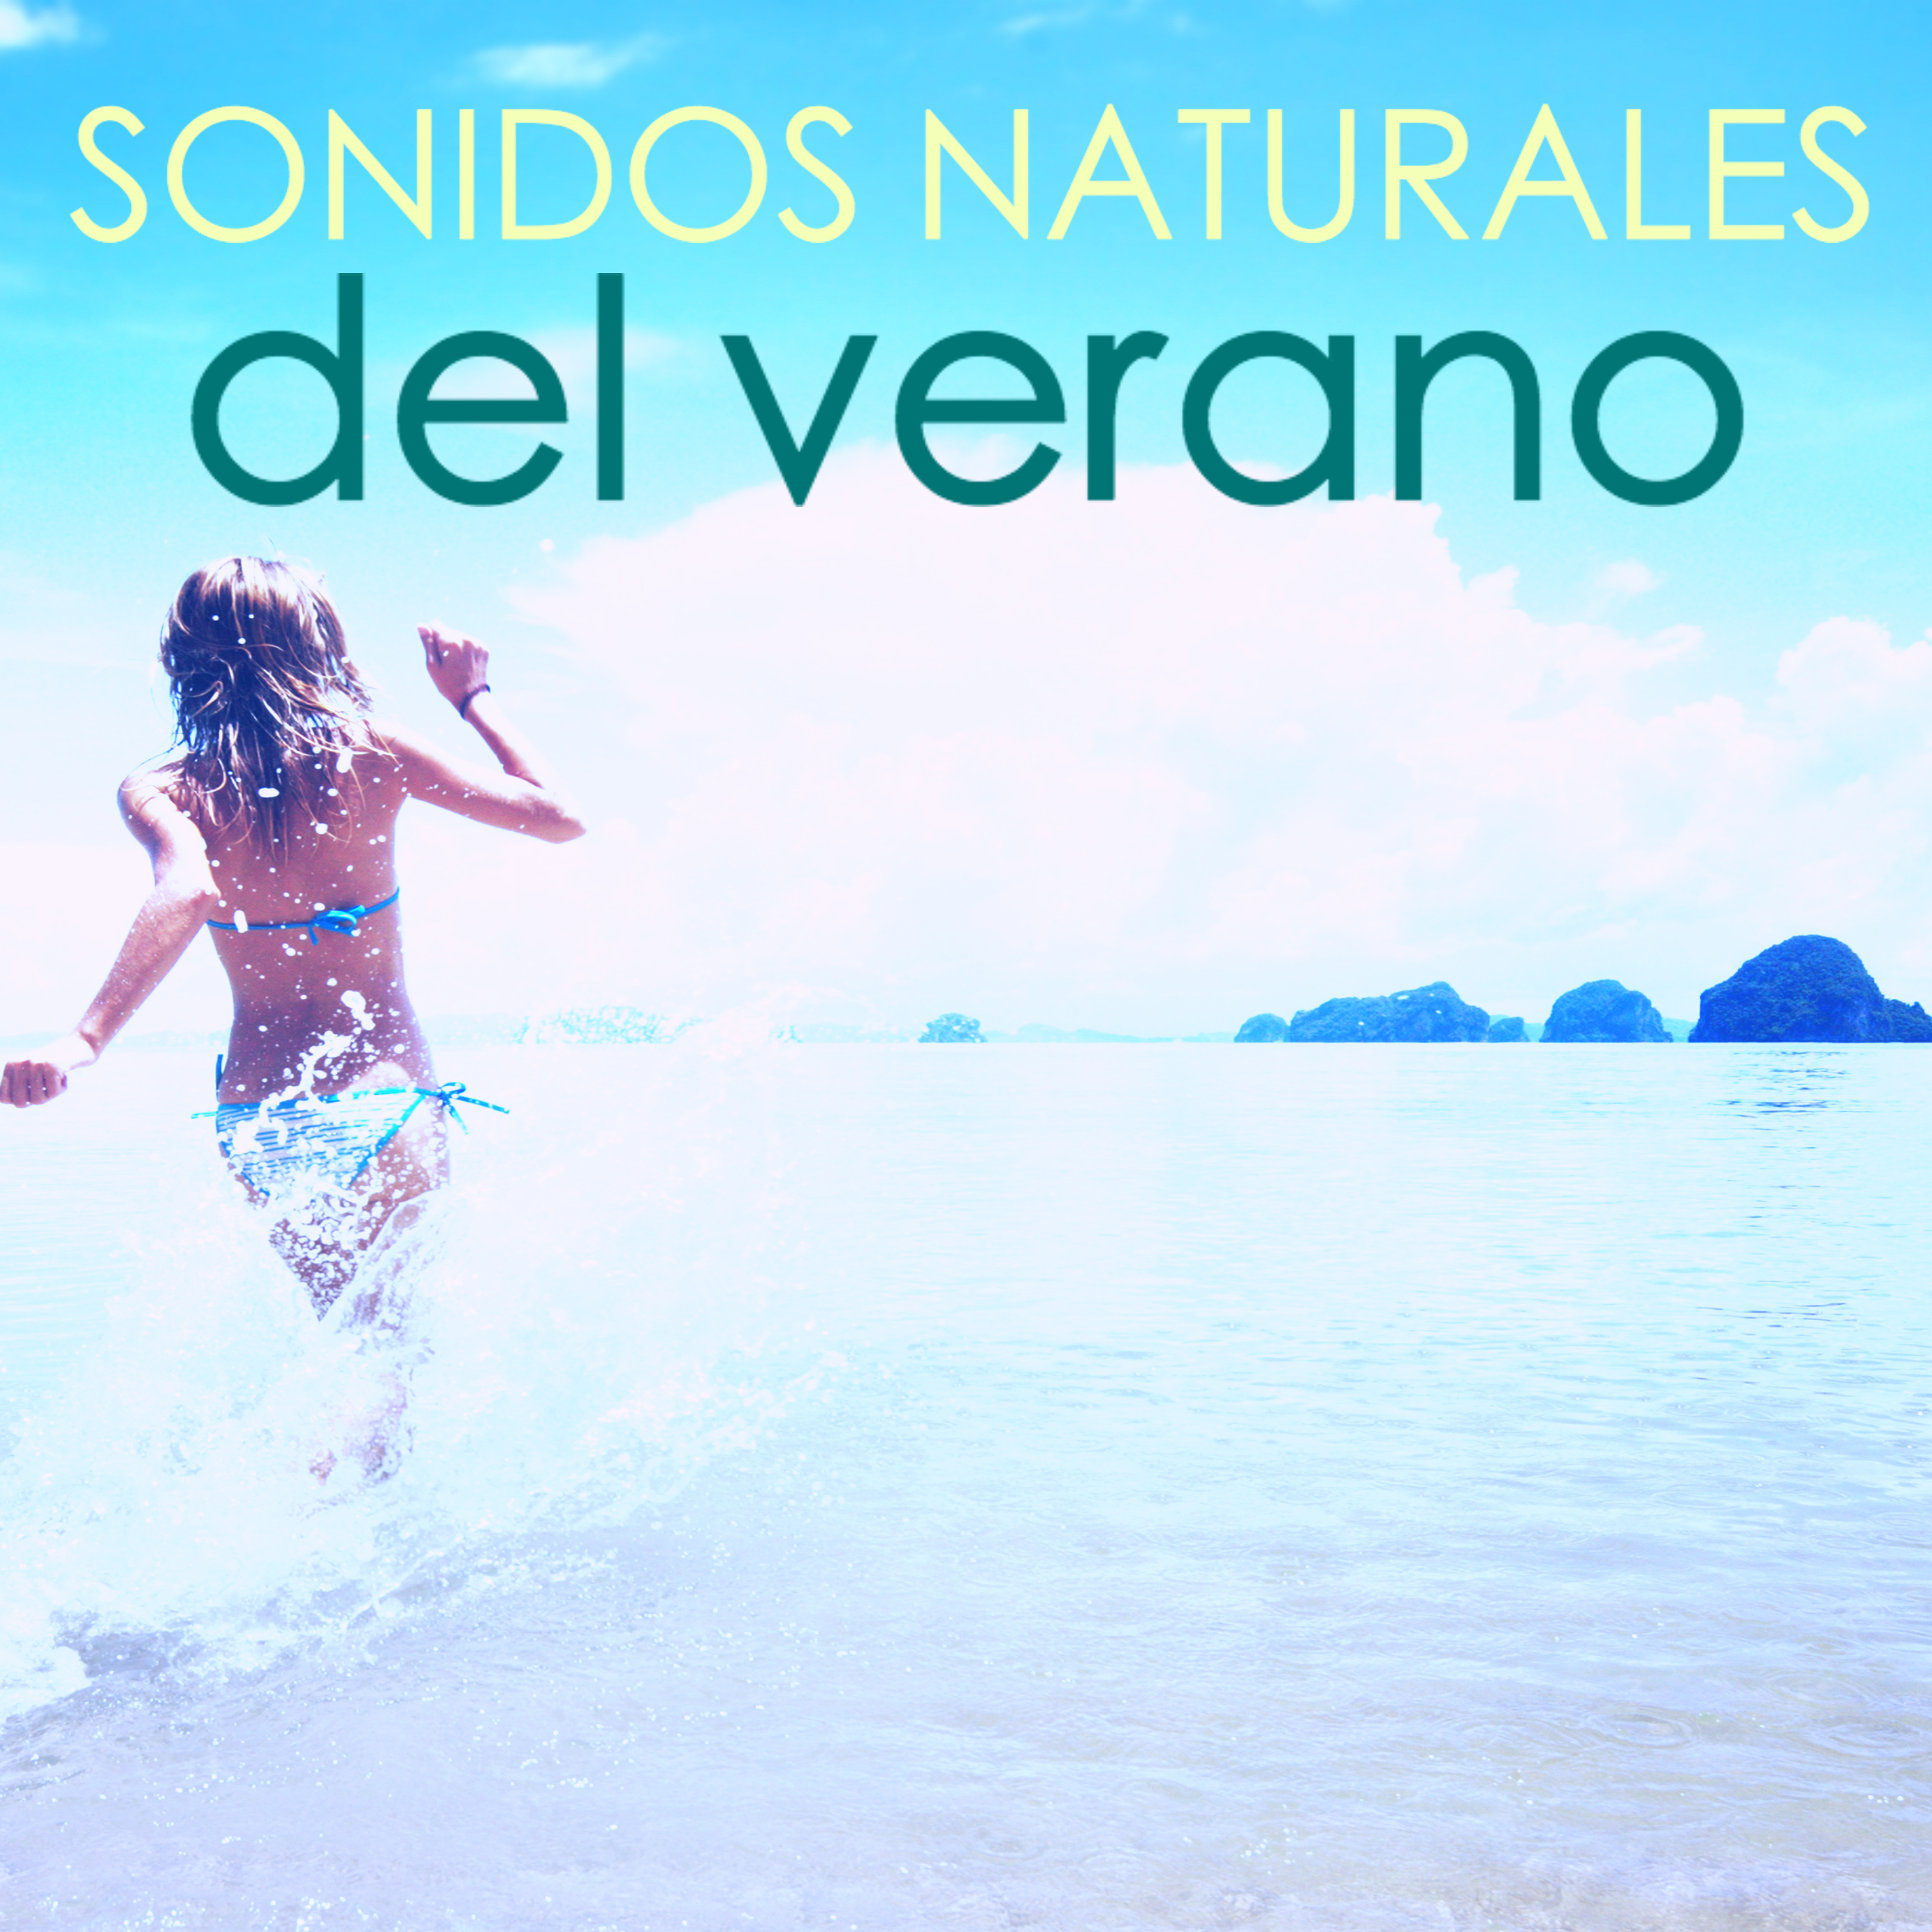 Sonidos Naturales del Verano  Ambiente  Agua del Mar, Olas y Pa jaros Cantores del Bosque